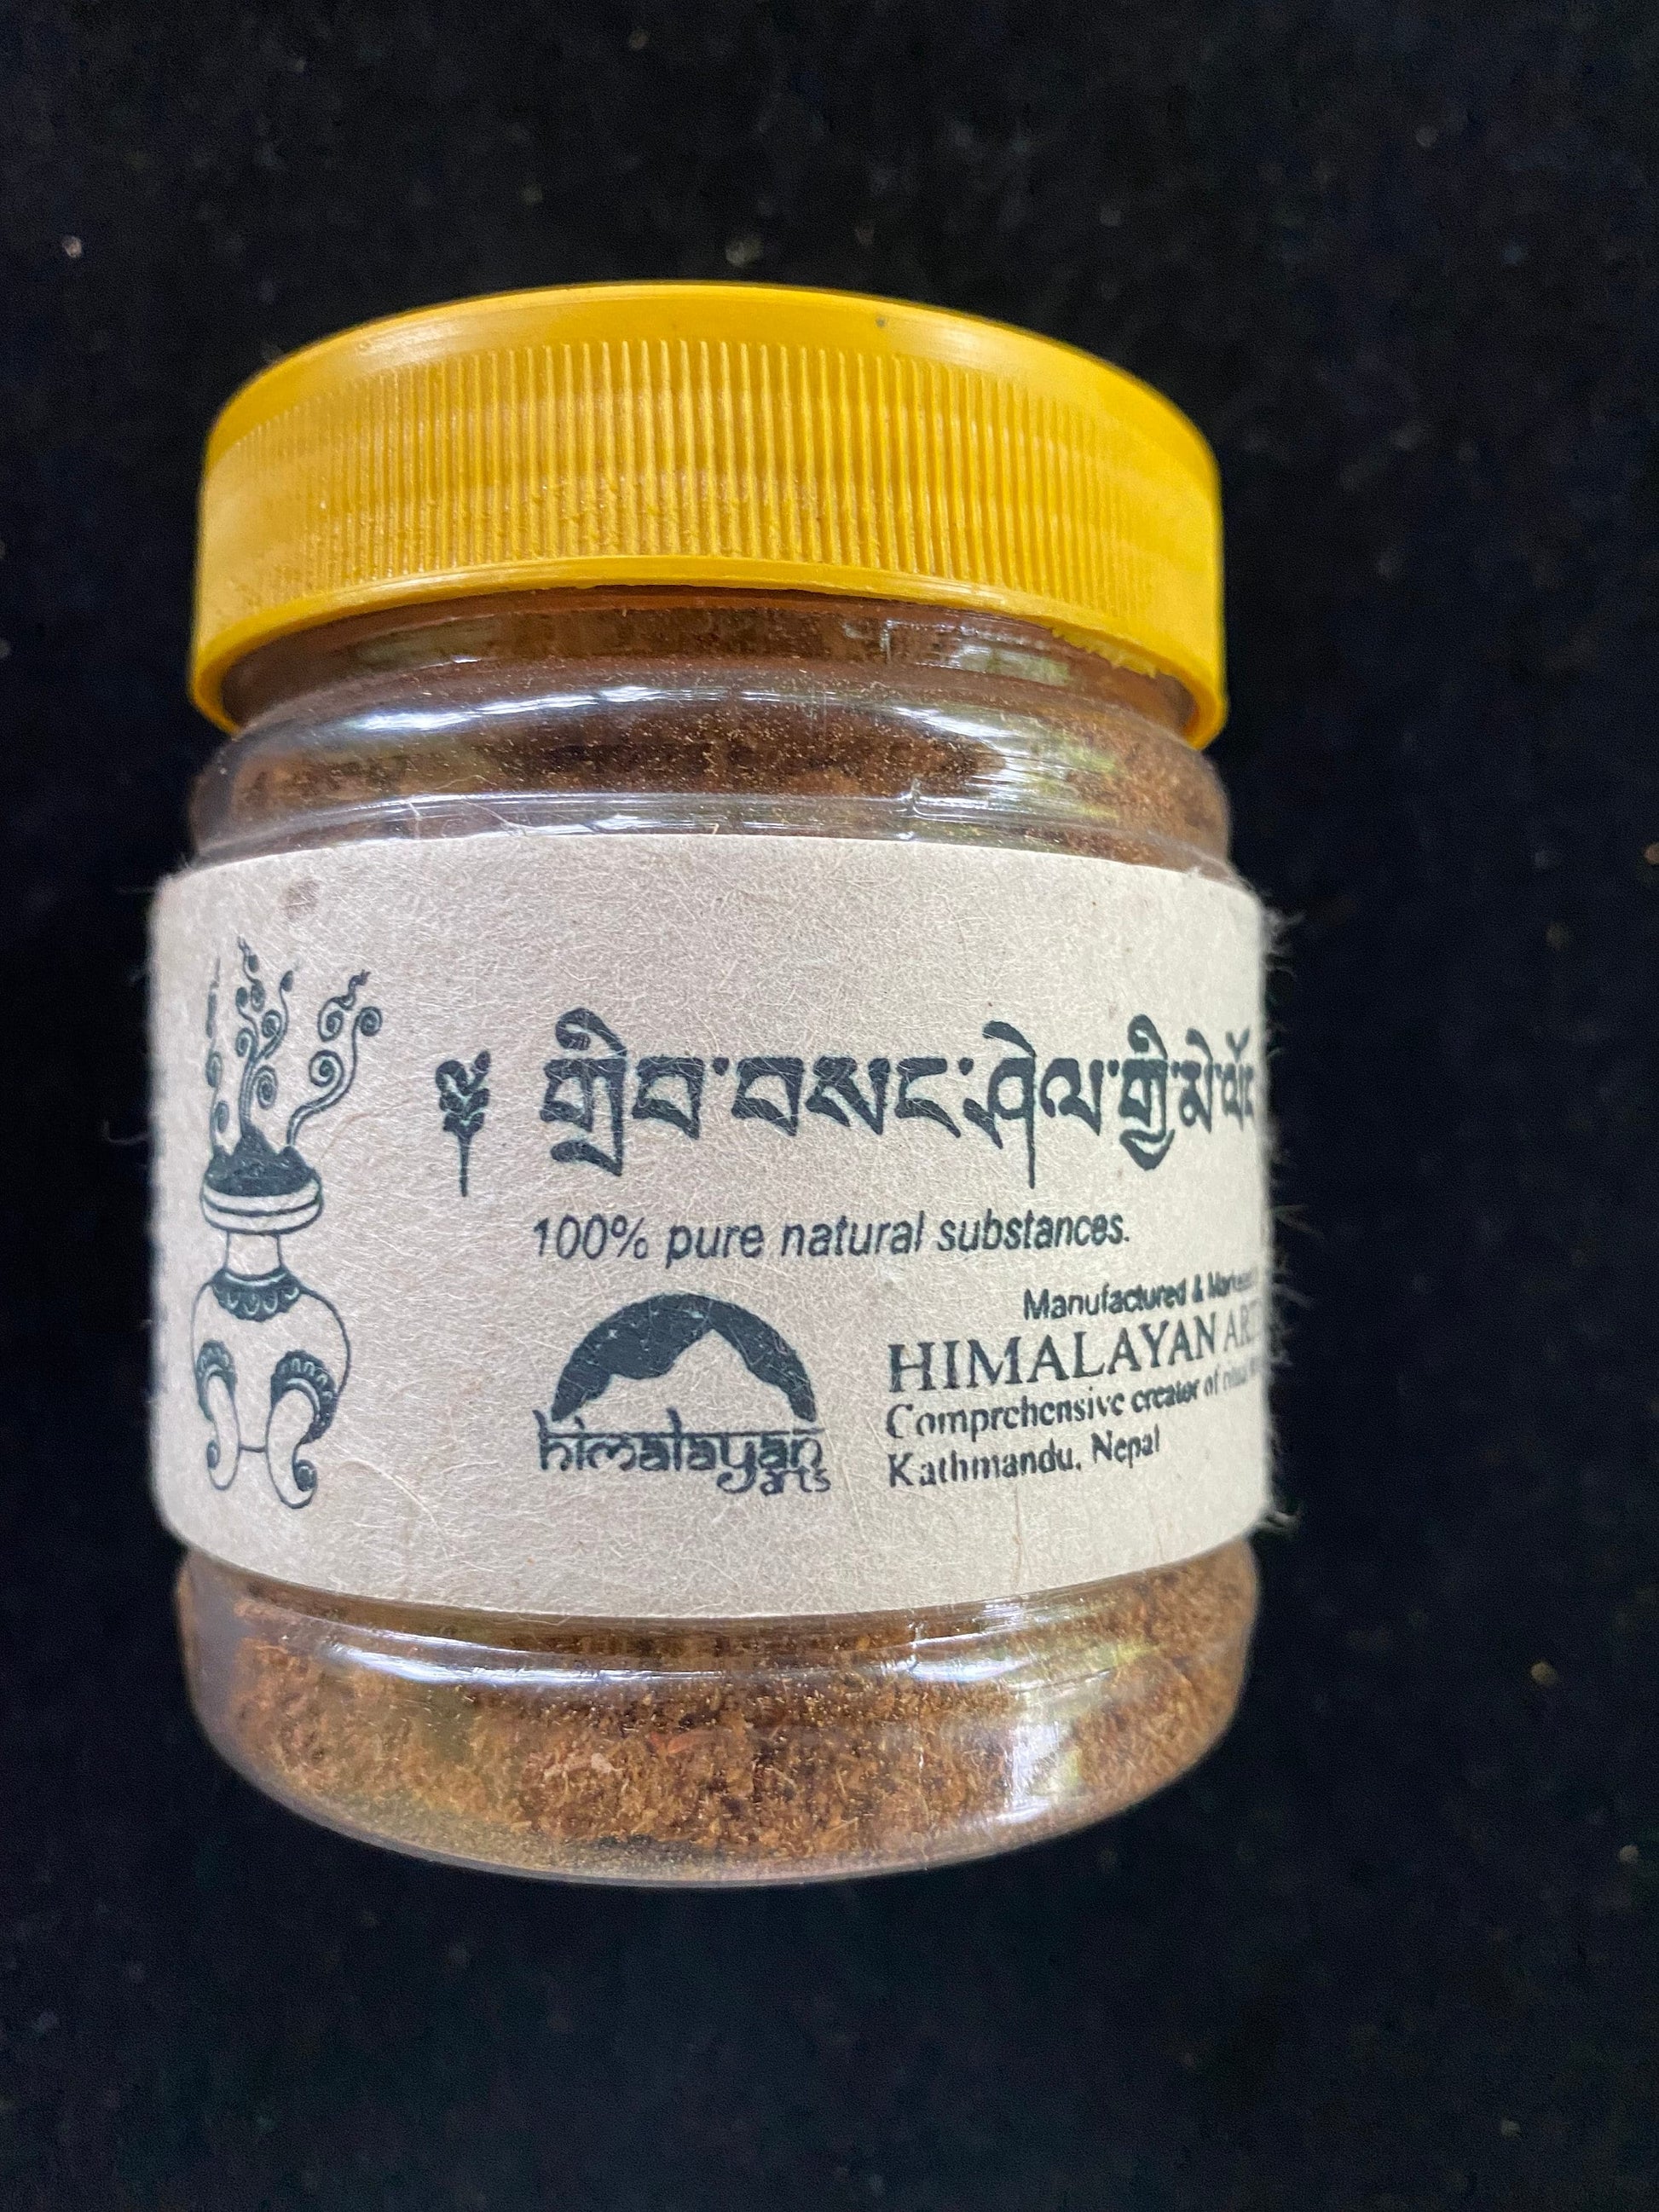 Drip Sang Powder| Incense Powder | 40 grams | Himalayan Arts